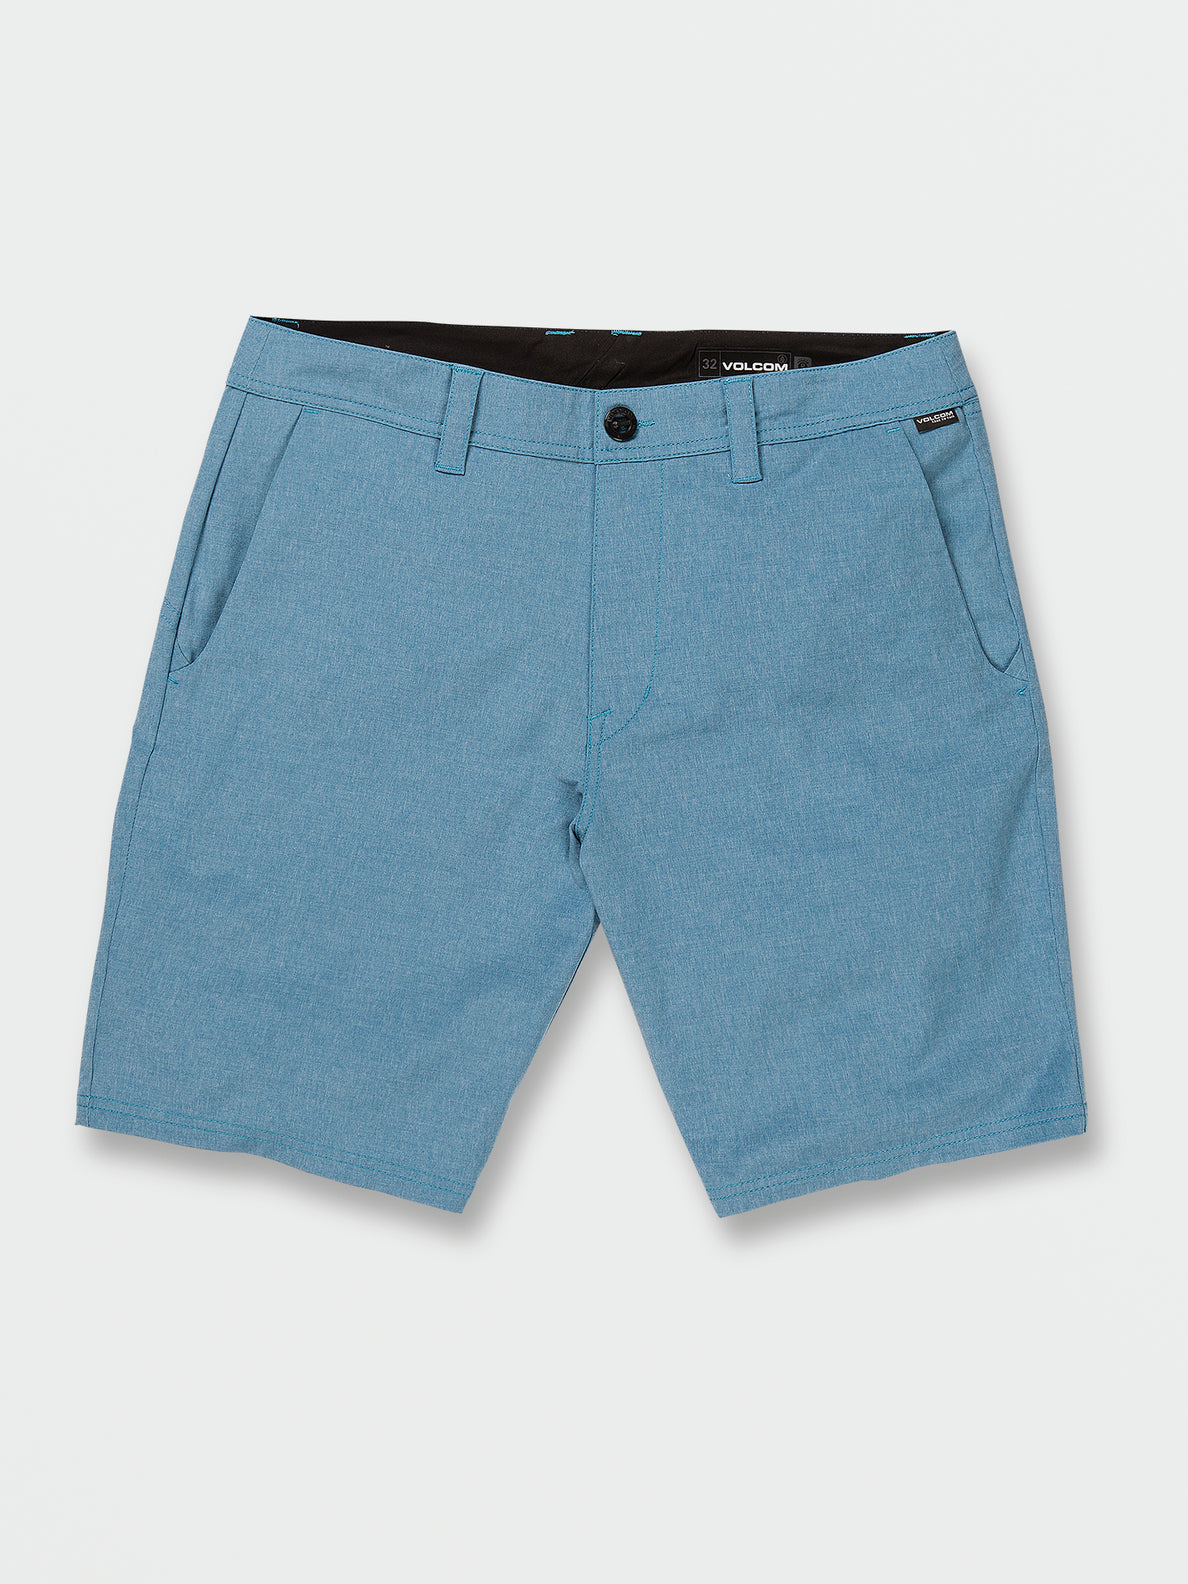 Volcom Men's Cross Shred Static Shorts - Celestial Blue